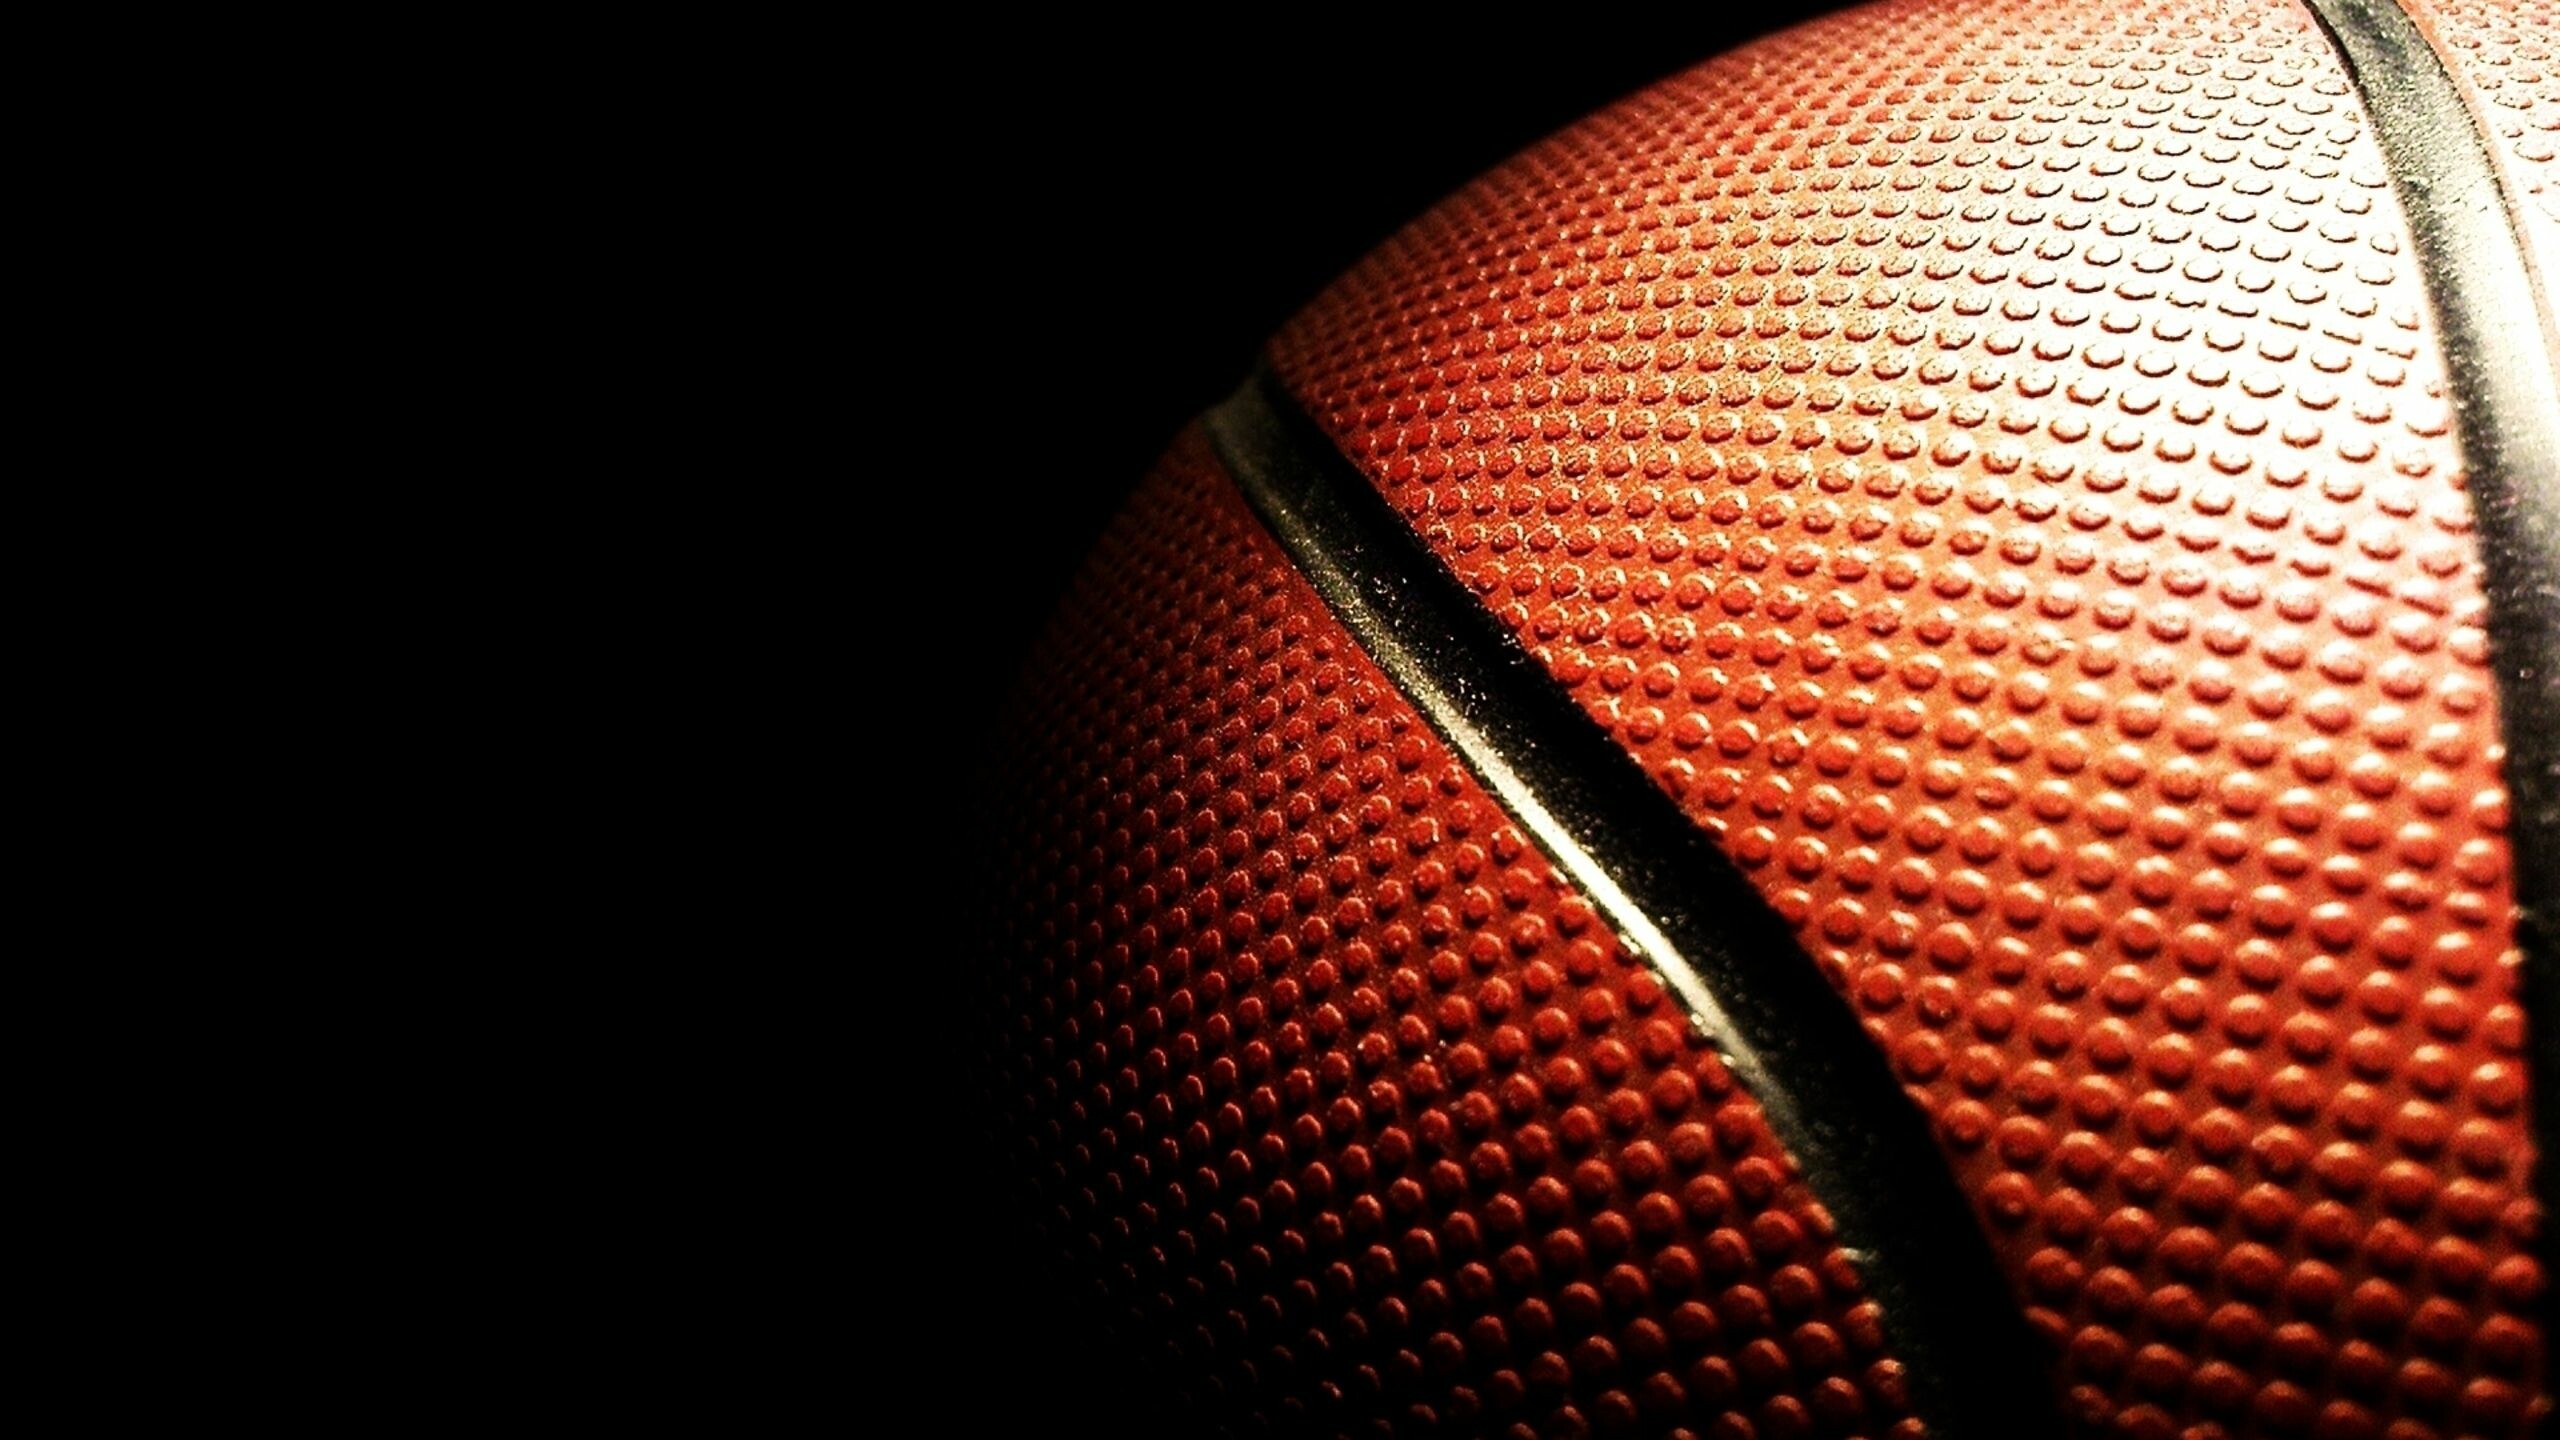 Basketball HD wallpapers, High-resolution images, Desktop backgrounds, Stunning visuals, 2560x1440 HD Desktop